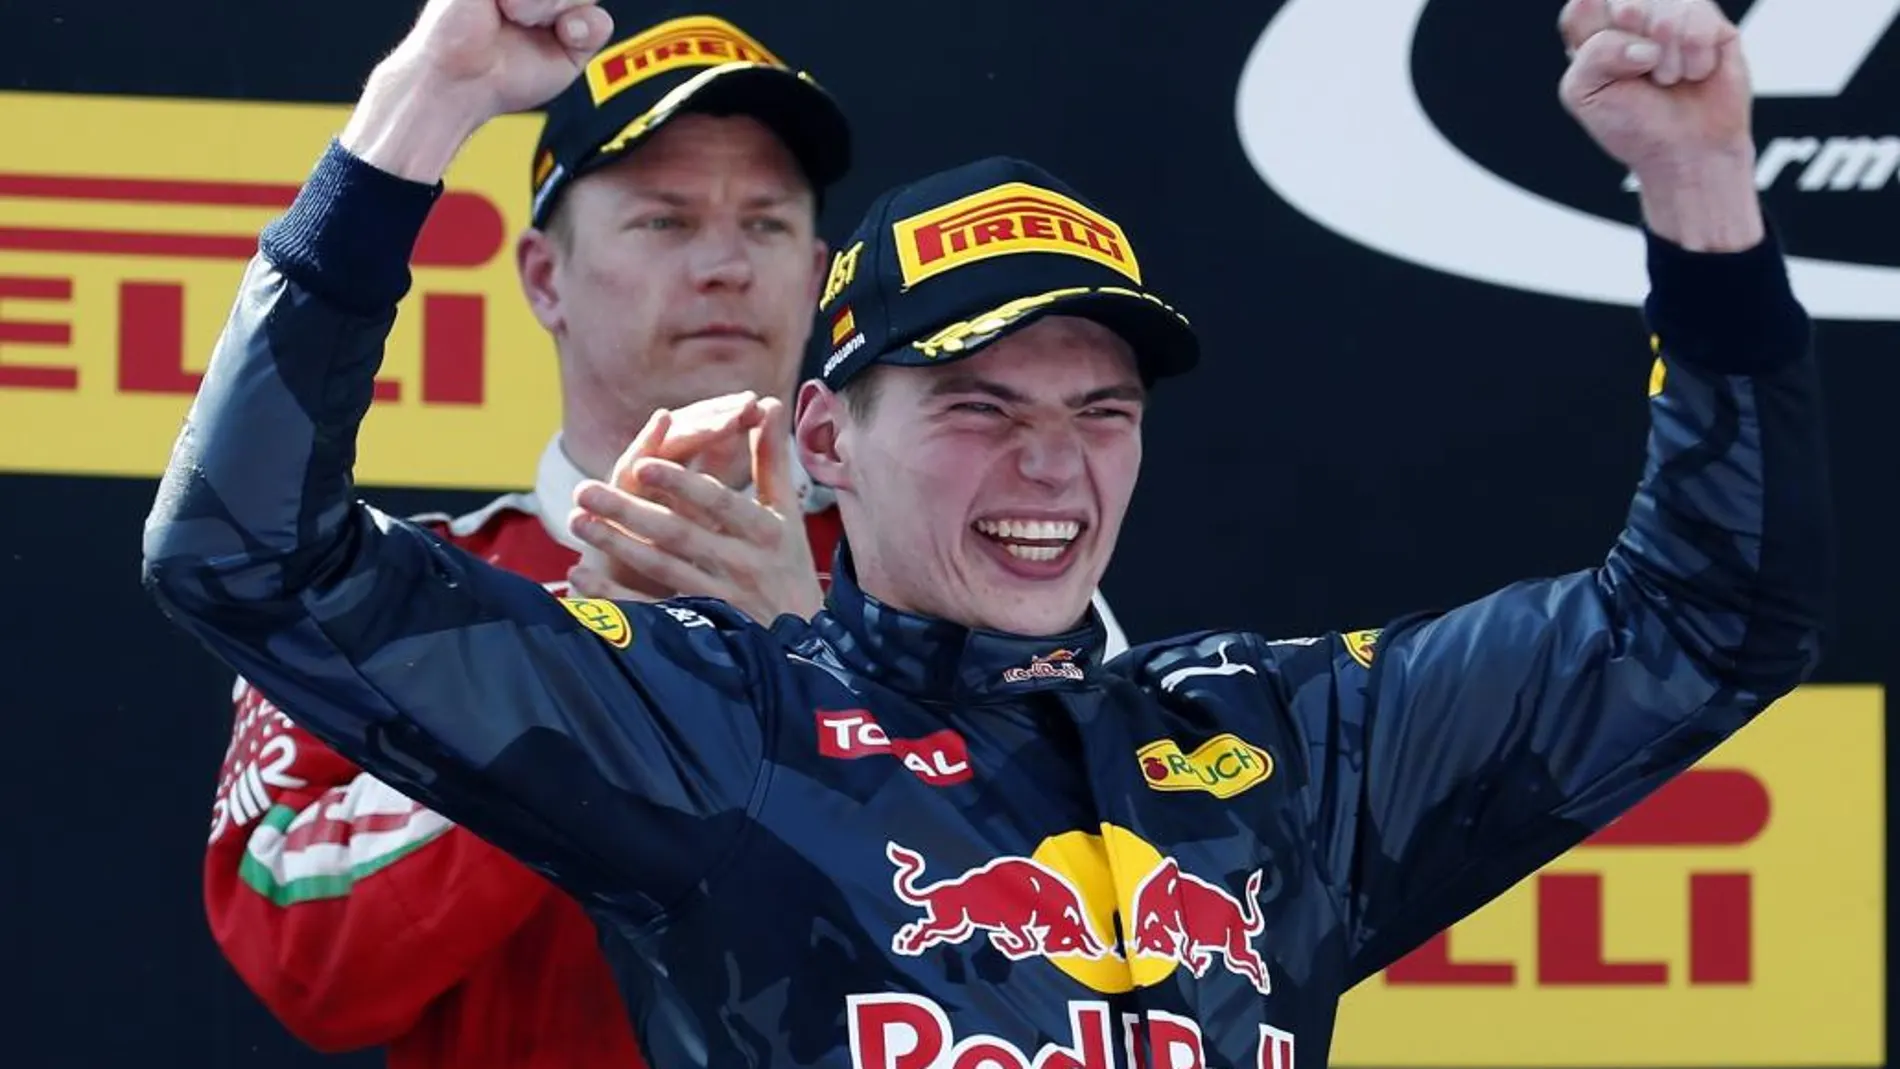 El piloto holandés Max Verstappen, del equipo Red Bull, celebra su victoria hoy en el Gran Premio de España.